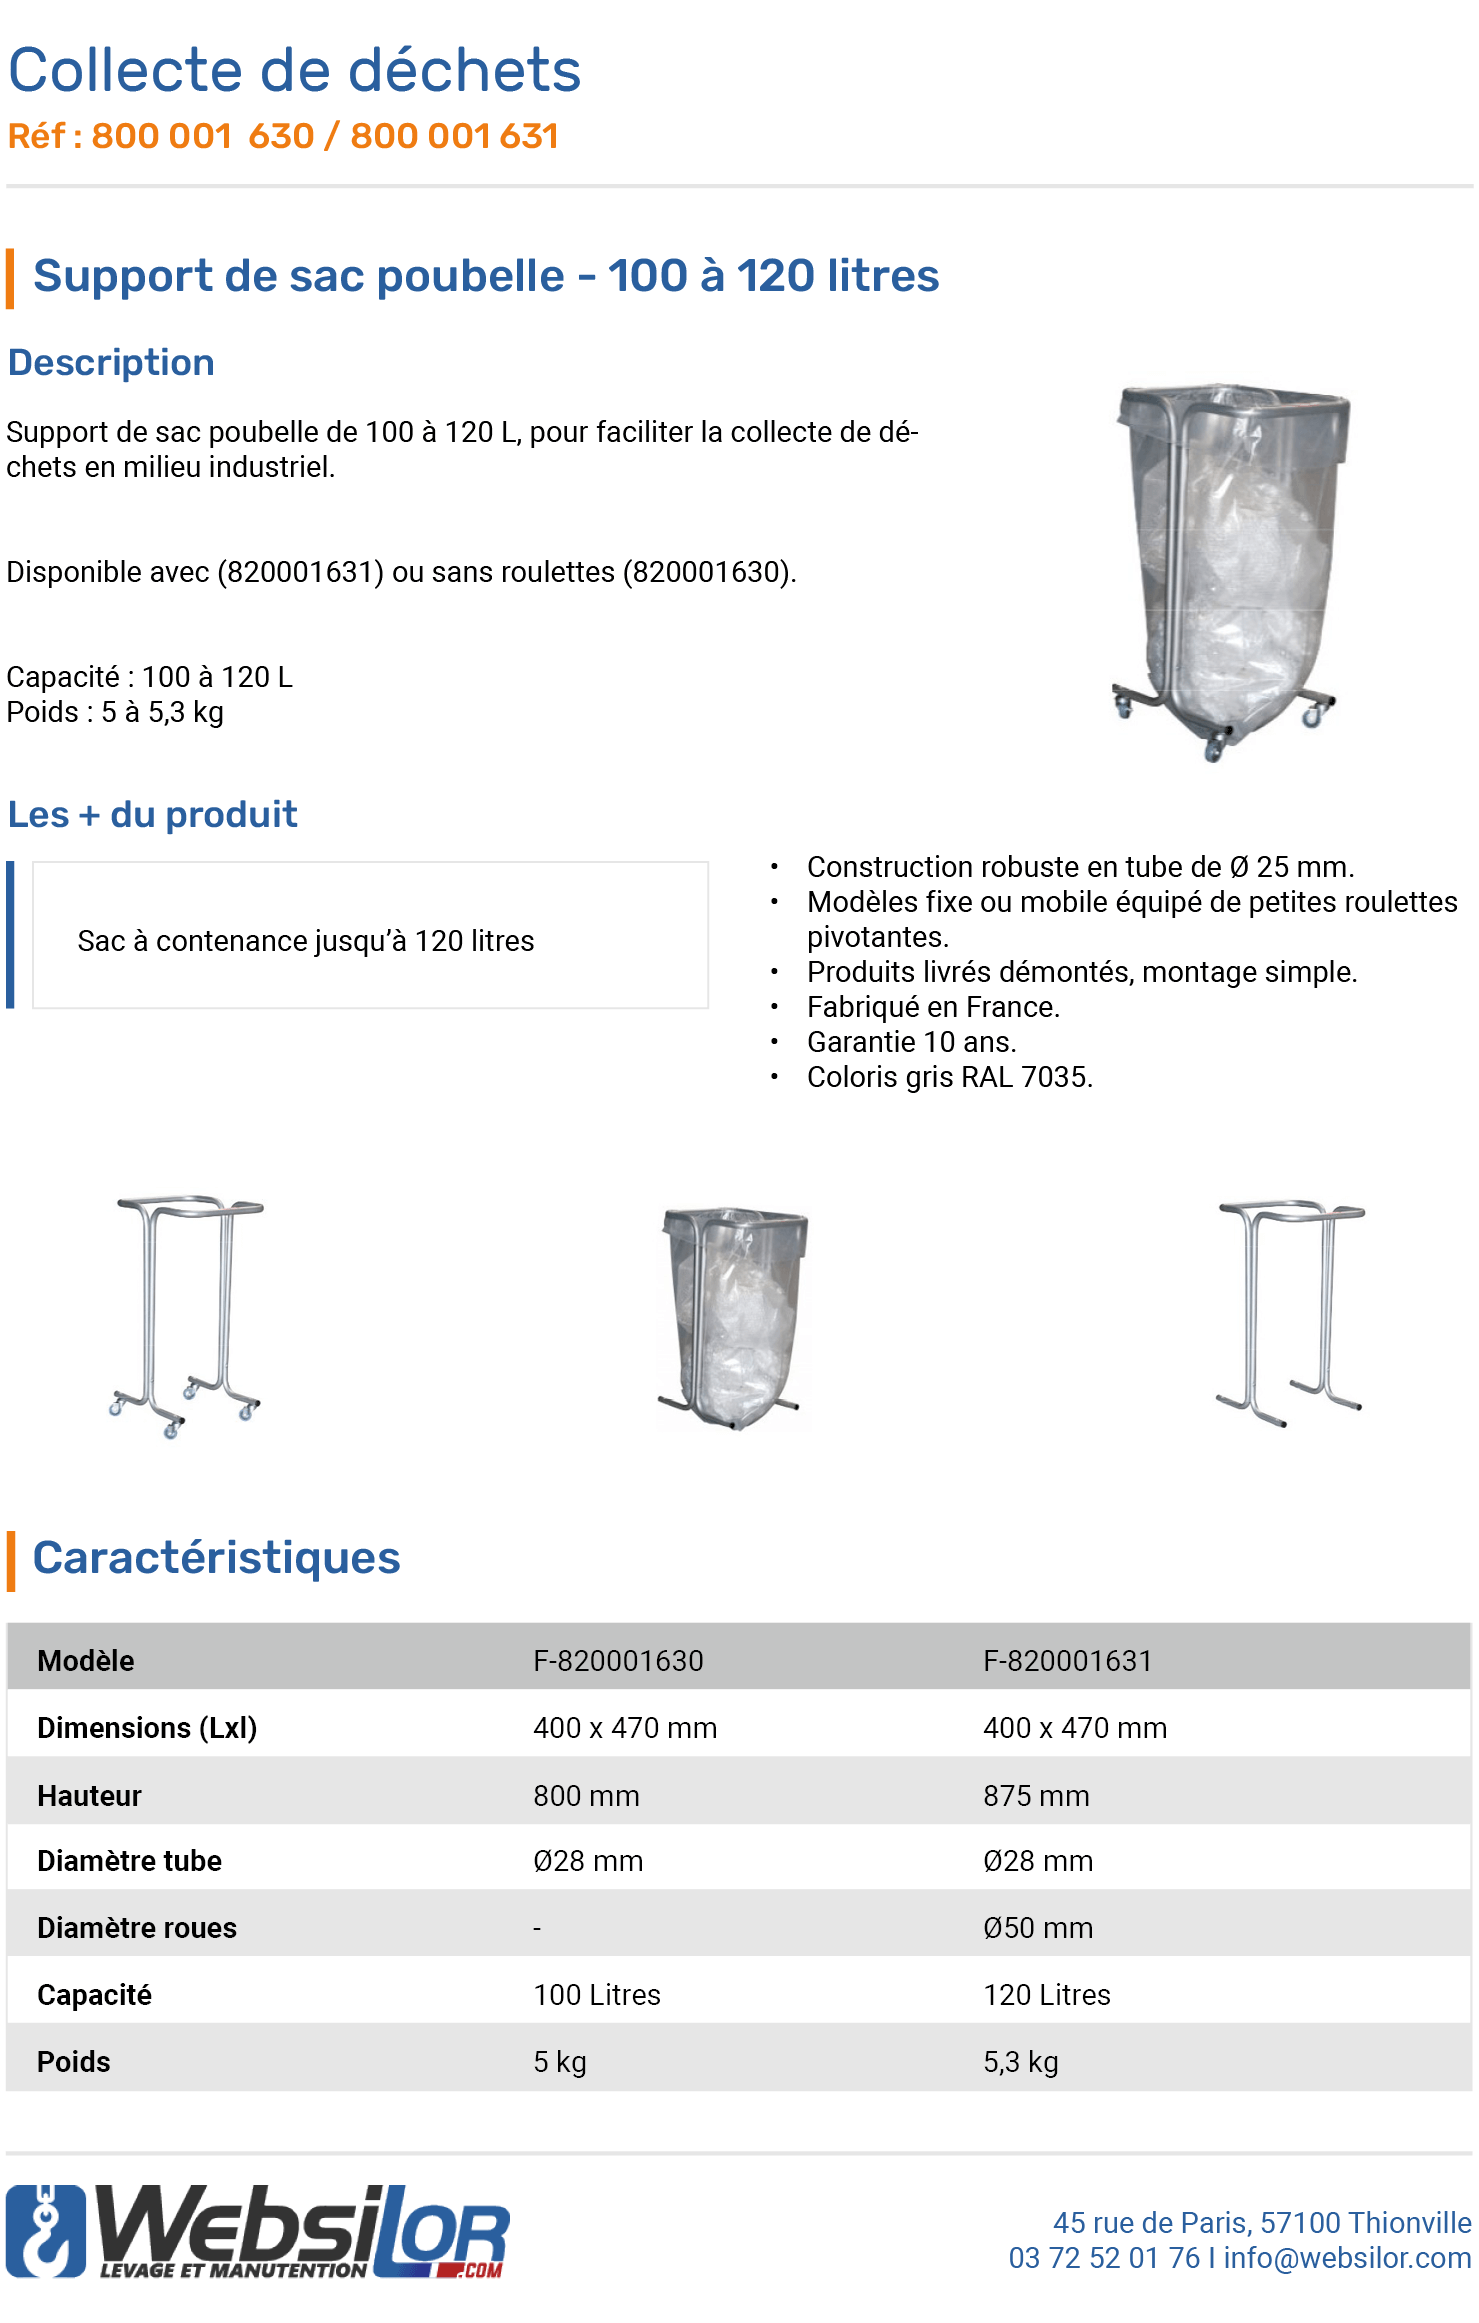 Informations technique de Support sac poubelle mobile - 100 à 120 L